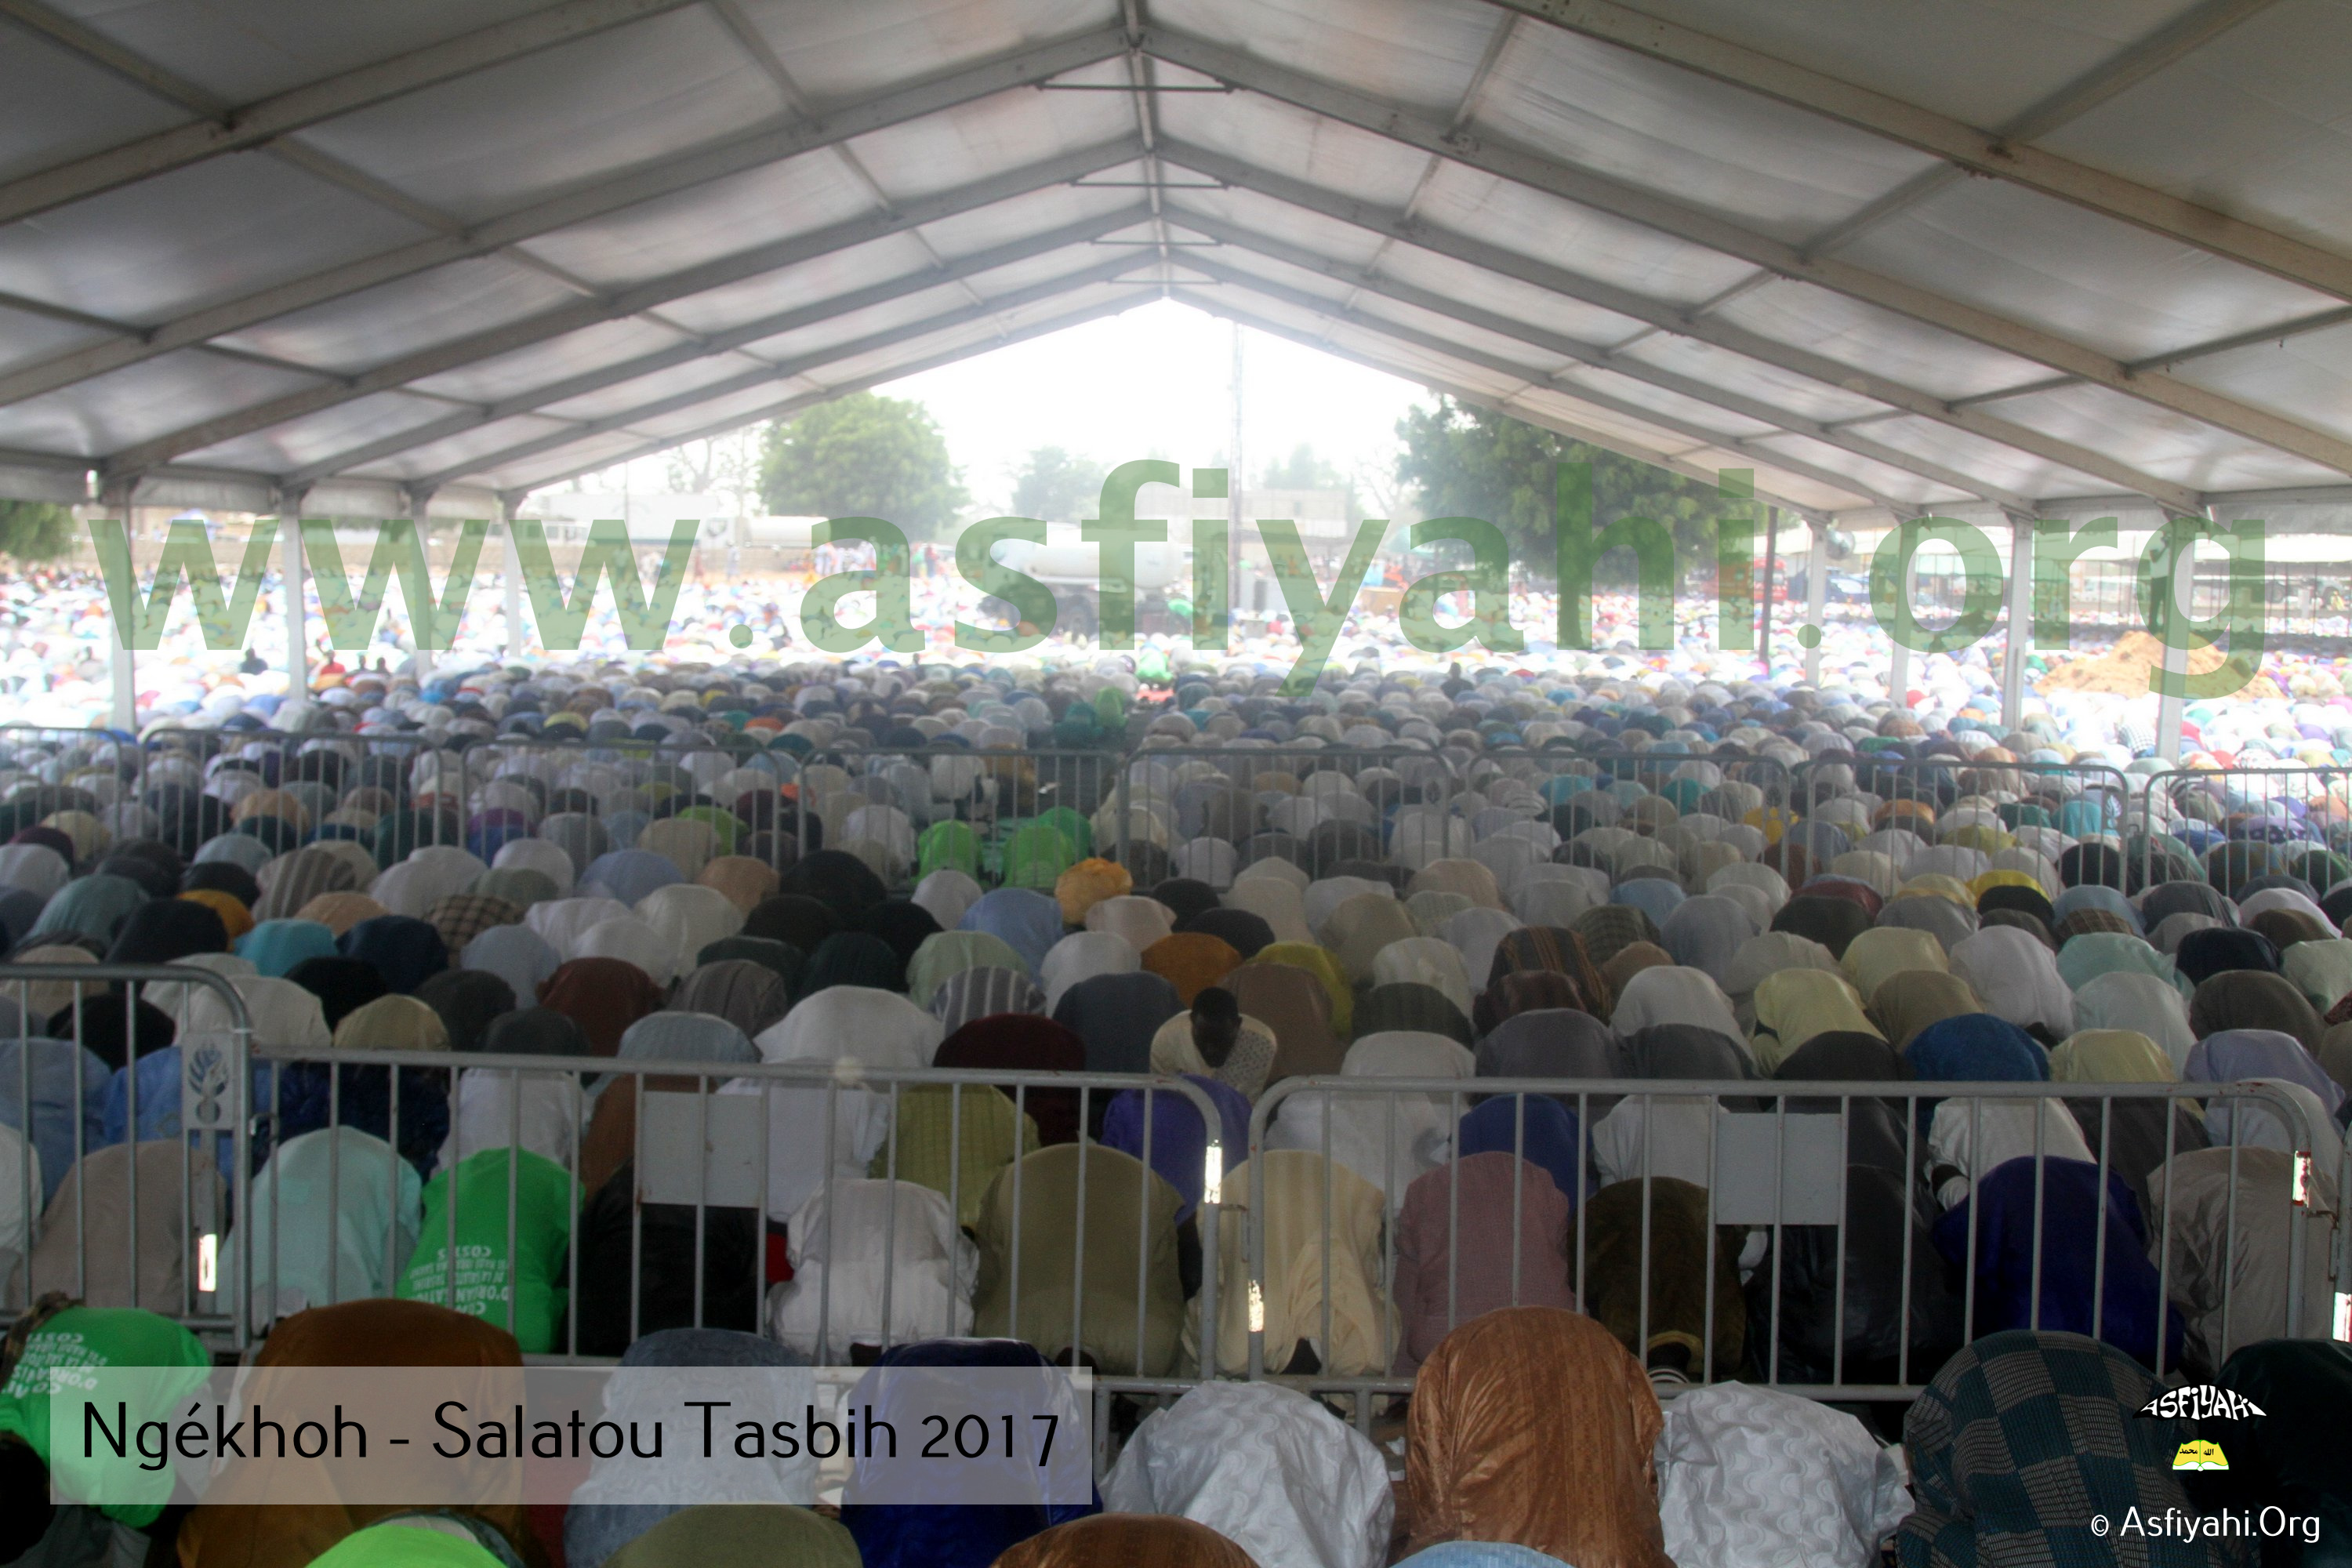 PHOTOS - NGÉKHOKH - Les Images de la Salatou Tasbih 2017 organisée par la famille d'El Hadj Elimane Sakho (rta)